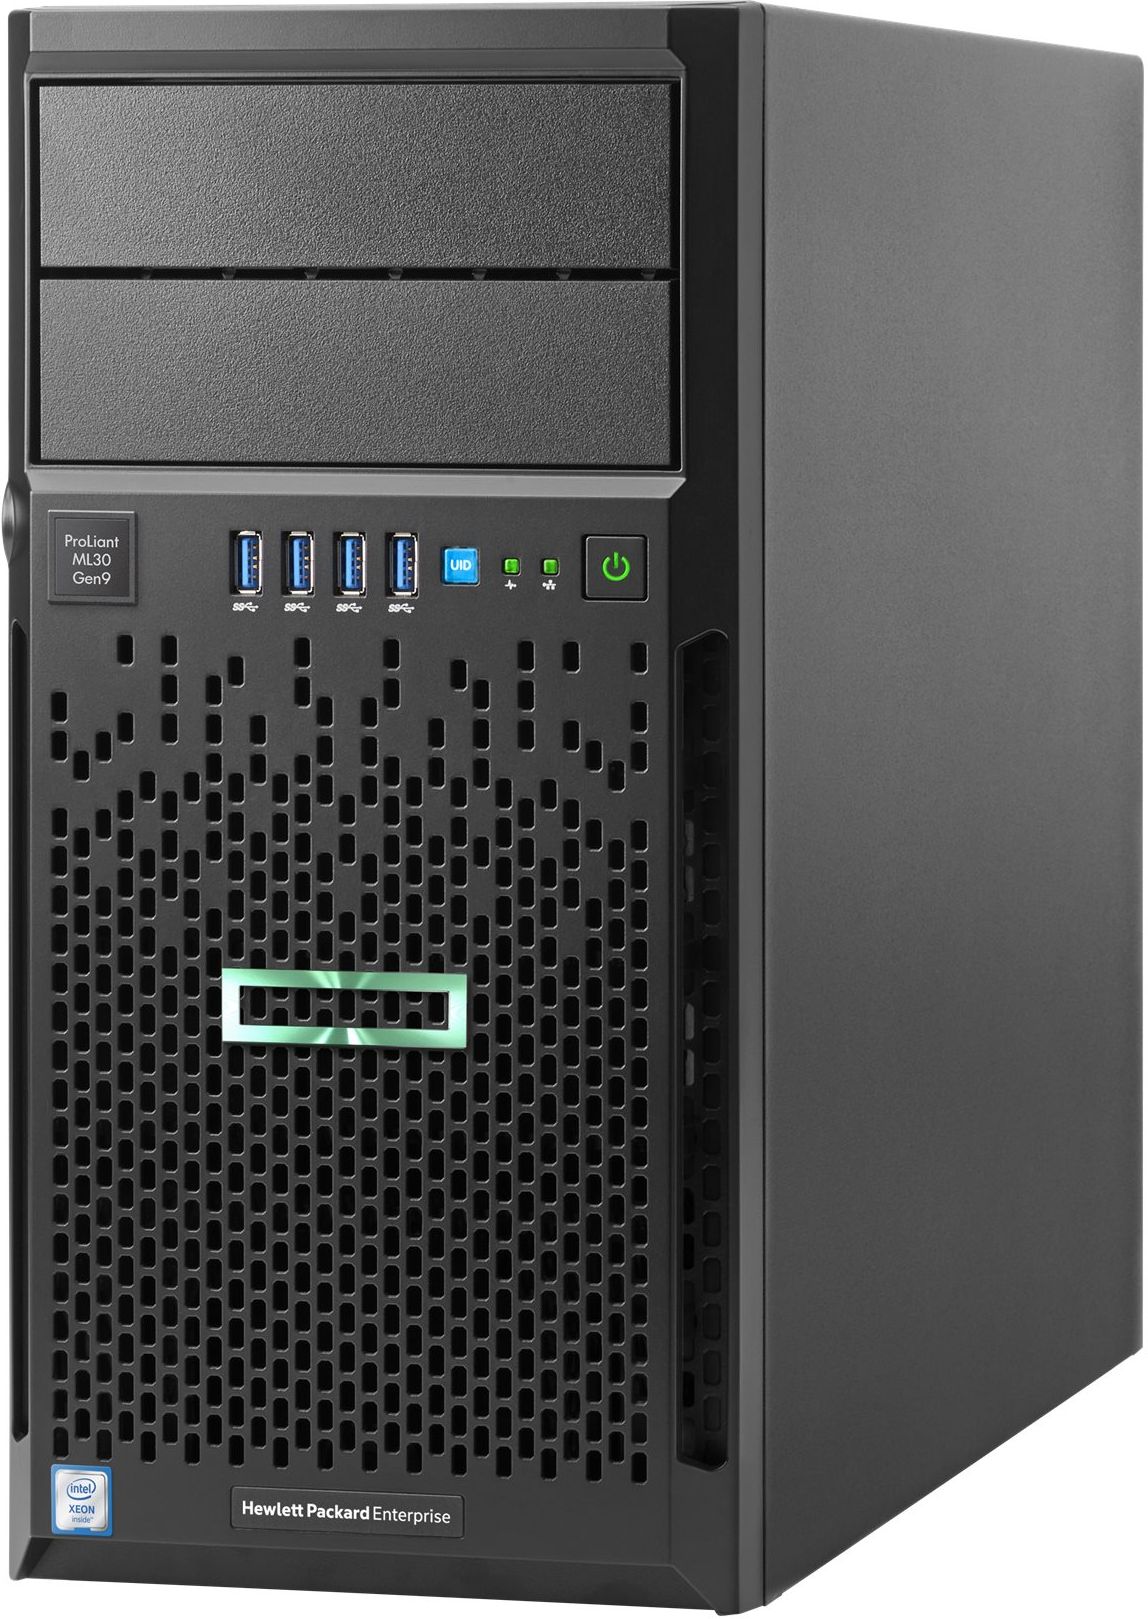 Сервер HP ProLiant ML30 Gen9, E3-1220v6 NHP Tower(4U)/Xeon4C 3.0GHz(8MB)/1x8GB1UD_2400/B140i(ZM/RAID 0/1/10/5)/noHDD(4)LFF/noDVD/iLOstd(no port)/1NHPF